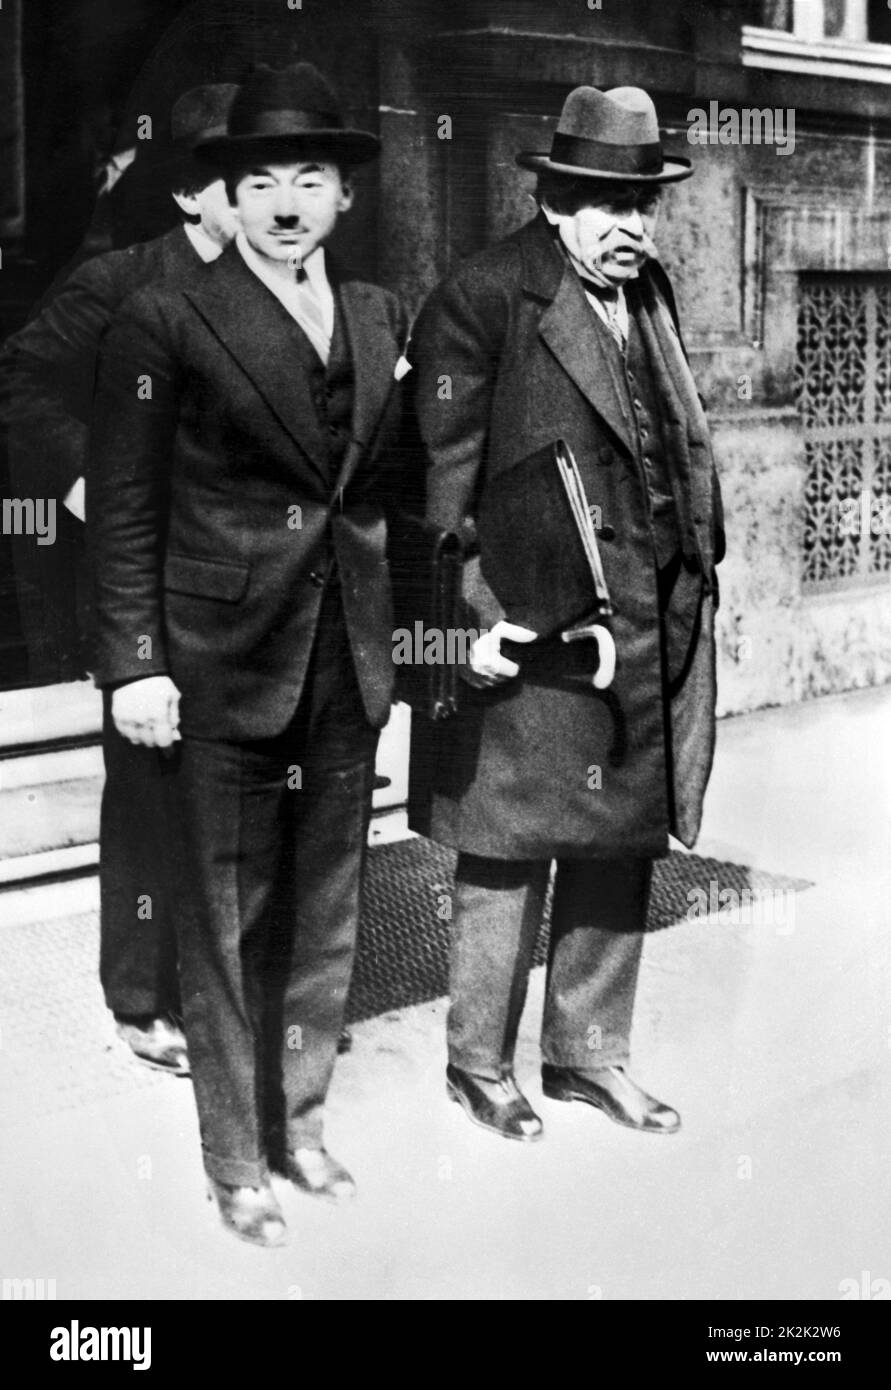 Le ministre français des Finances, Paul Reynaud, et le ministre des Affaires étrangères, Aristide Briand, nommés au second gouvernement de Tardieu sous la présidence de Gaston Doumergue. Paris, 1930 Banque D'Images